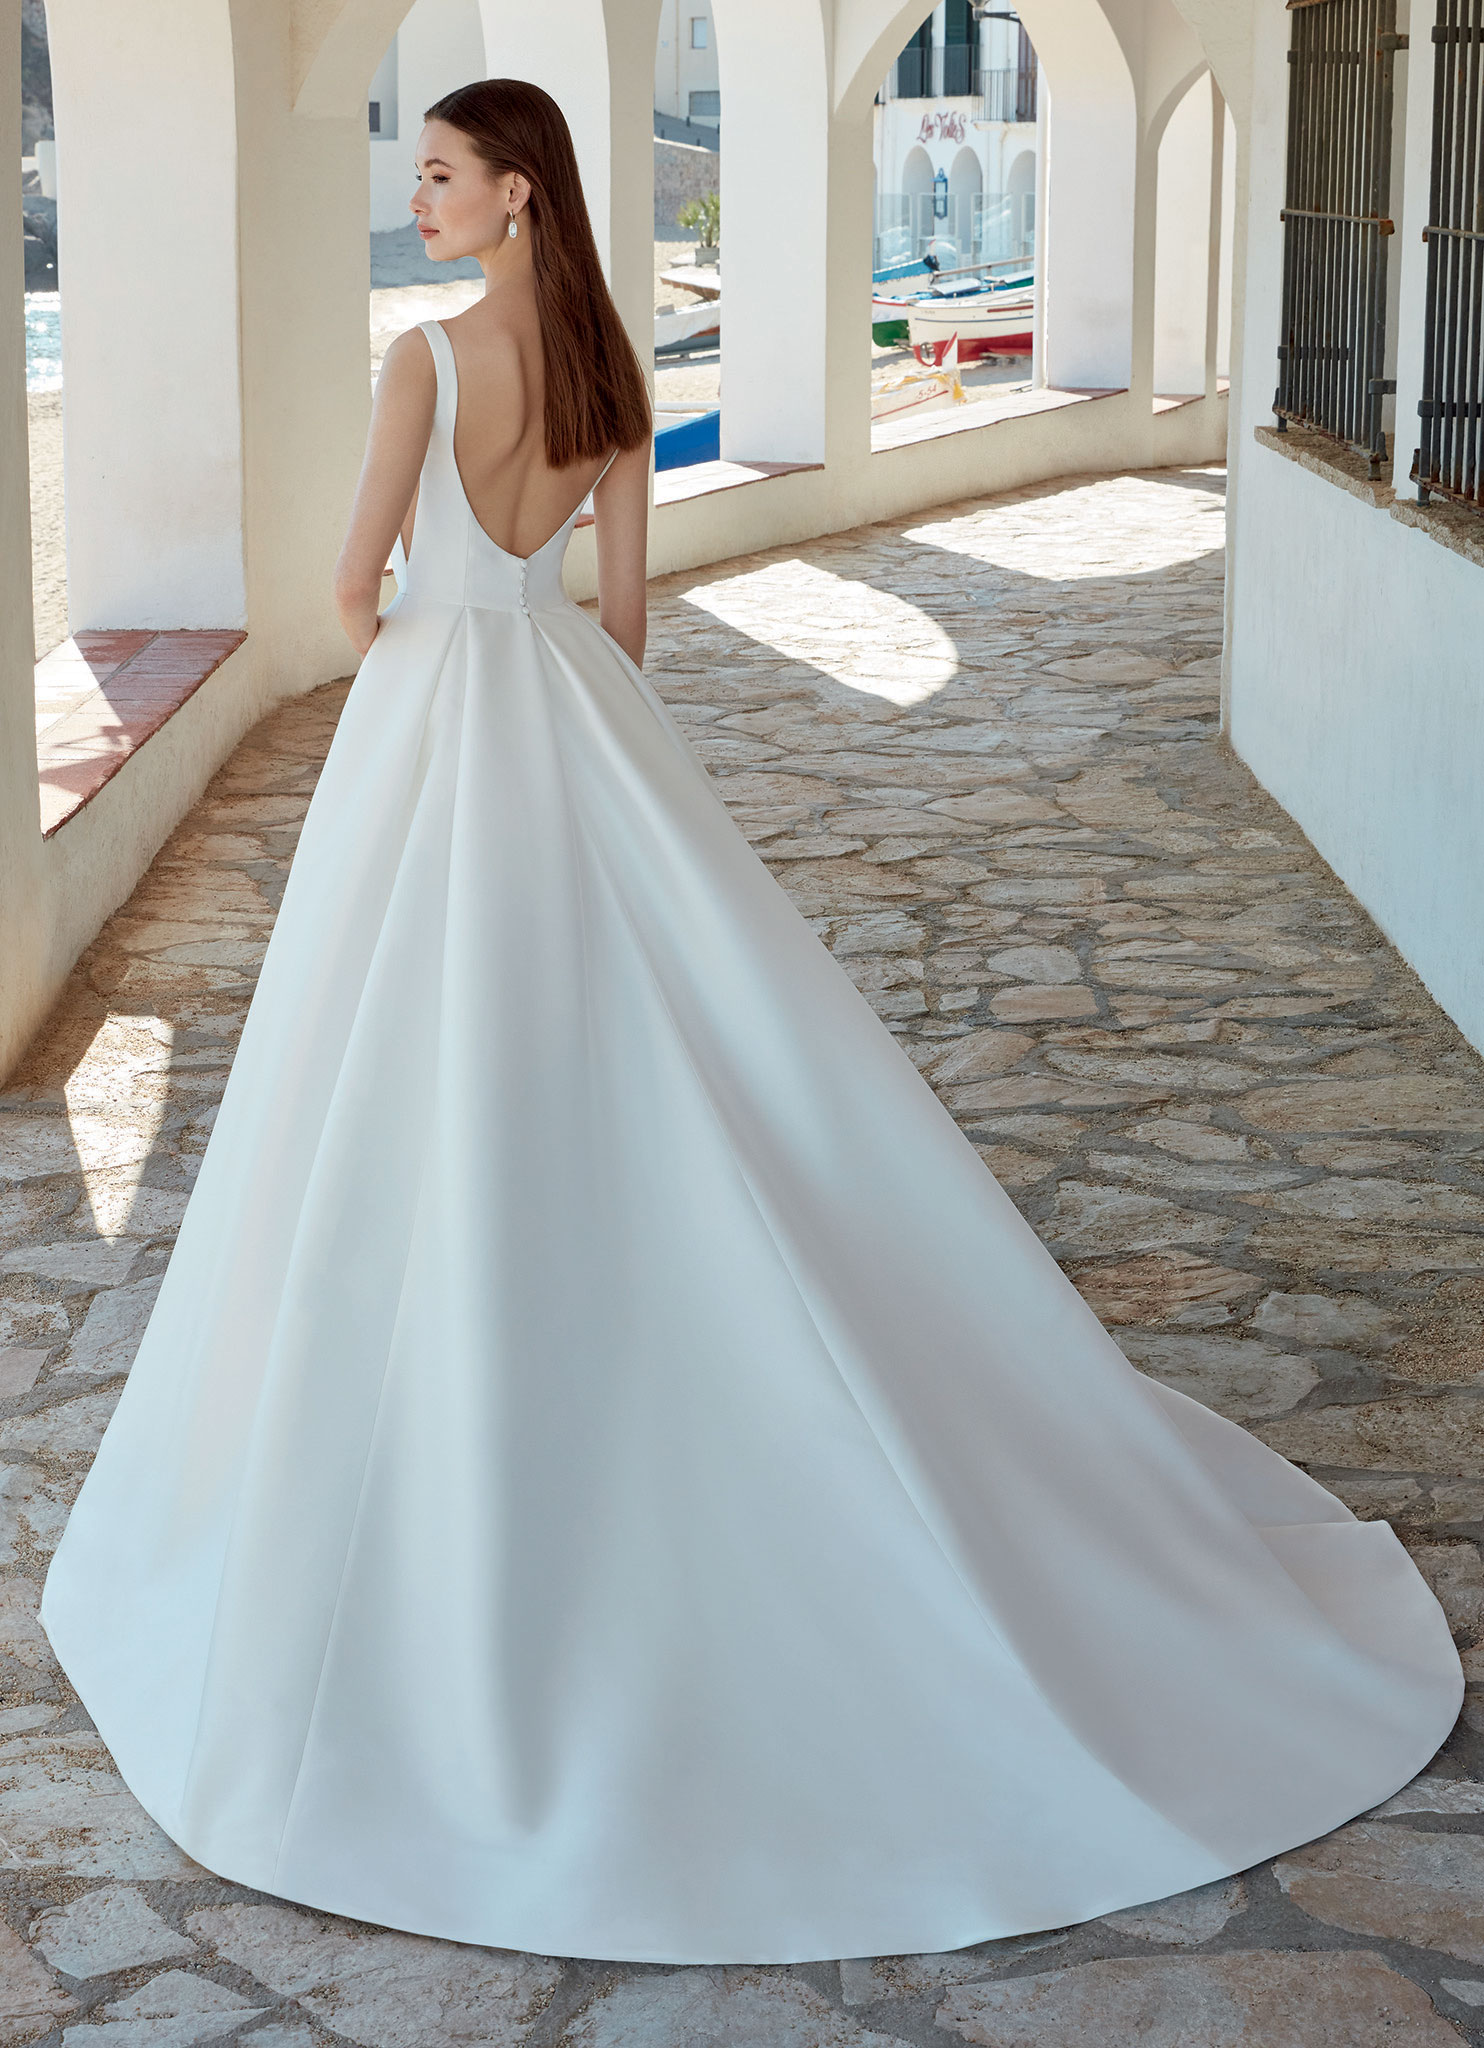 Arlette wedding dress by Enzoani